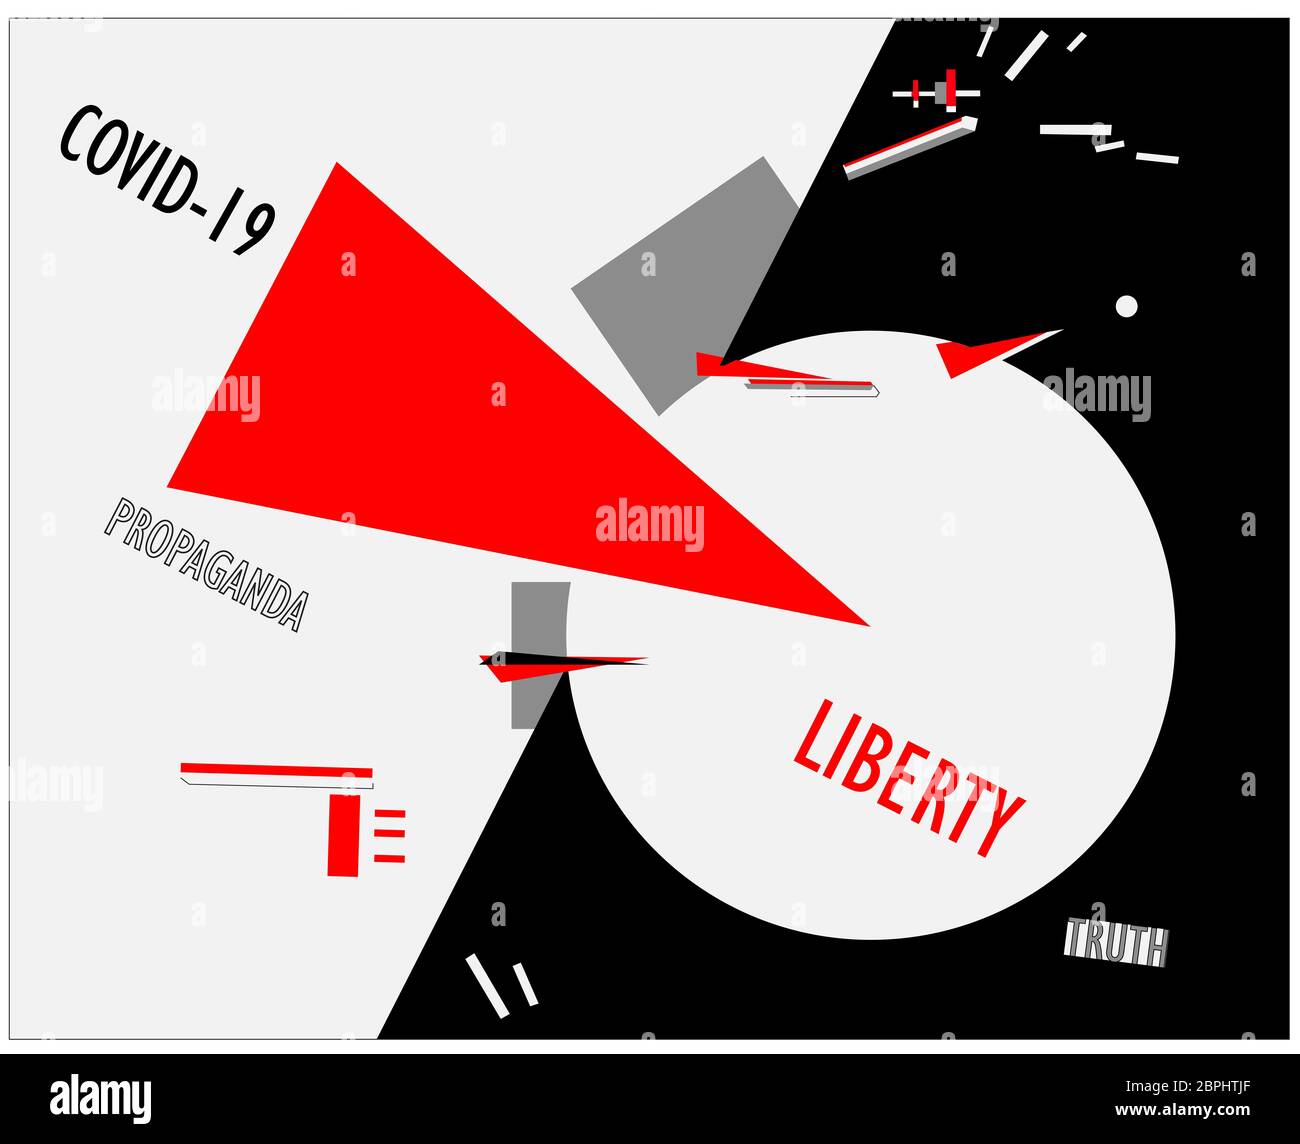 Covid-19 affiche de propagande contre la liberté et la vérité dans le style d'art contemporain de la suprématie. El Lissitzky Banque D'Images